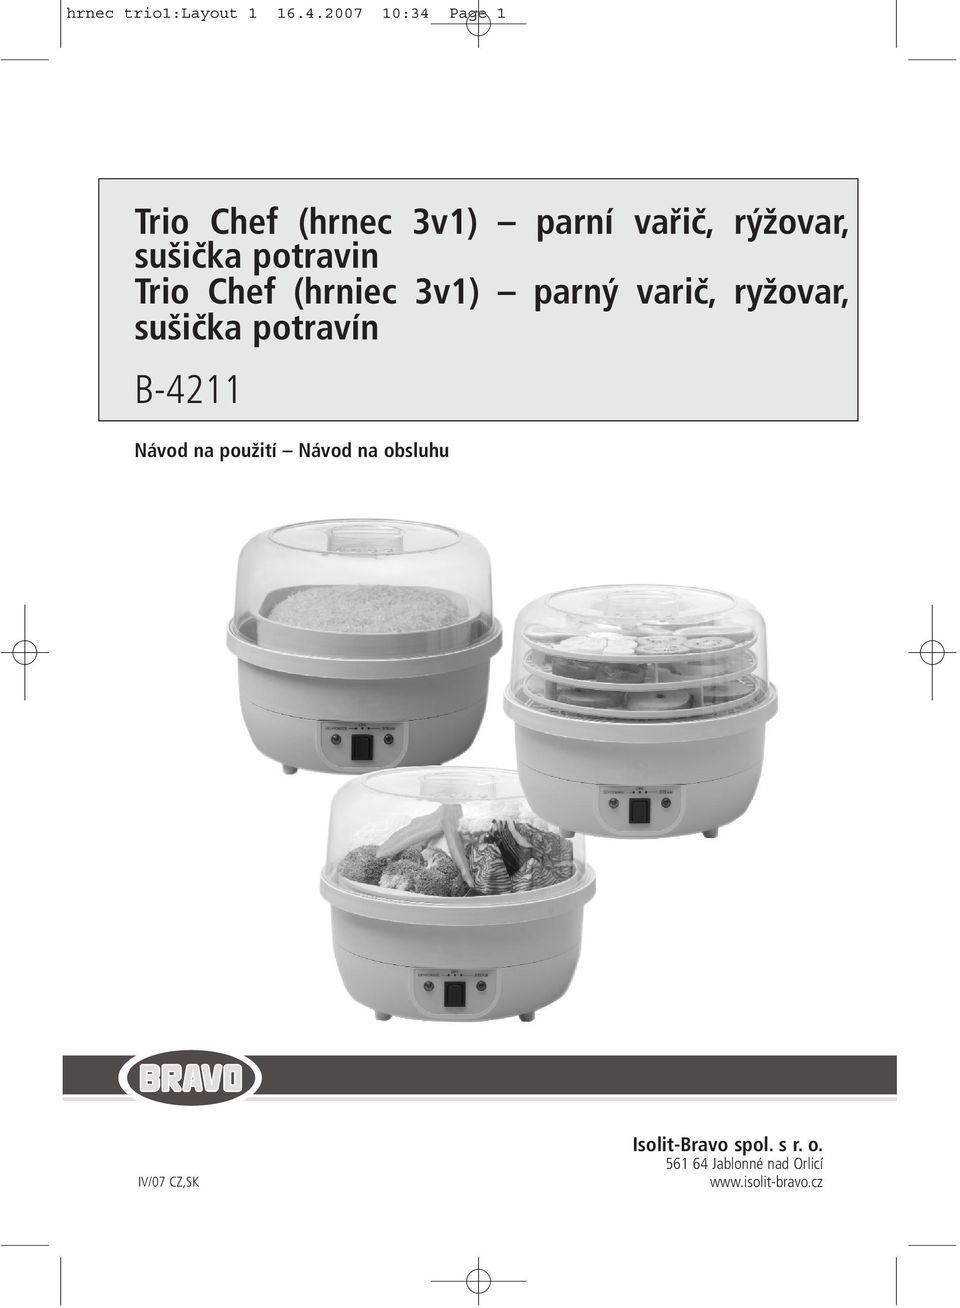 potravin Trio Chef (hrniec 3v1) parný varič, ryžovar, sušička potravín